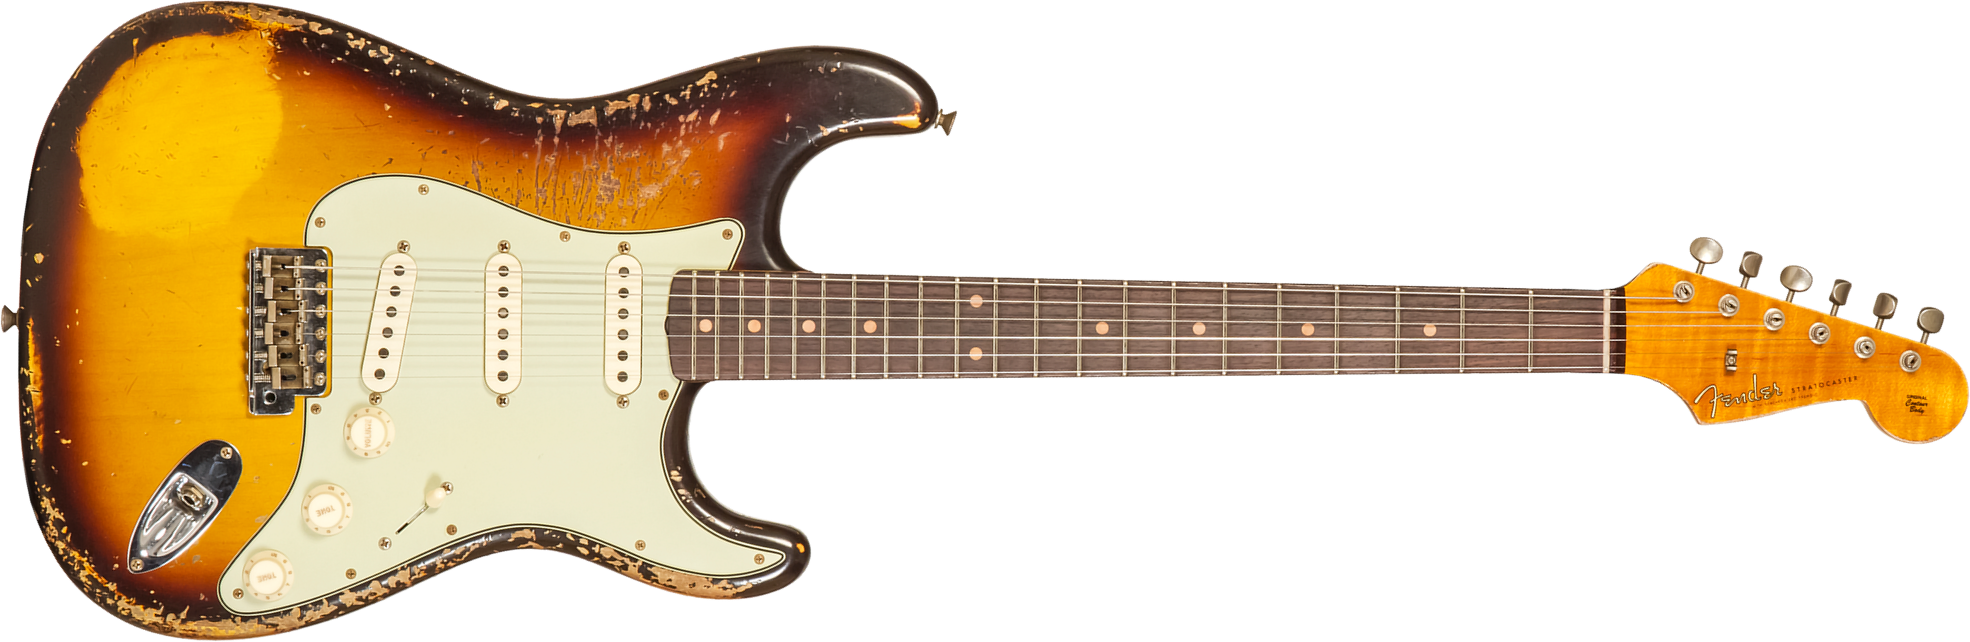 Fender Custom Shop Strat 1959 3s Trem Rw #cz571958 - Super Heavy Relic Aged Chocolate 3-color Sunburst - Guitare Électrique Forme Str - Main picture